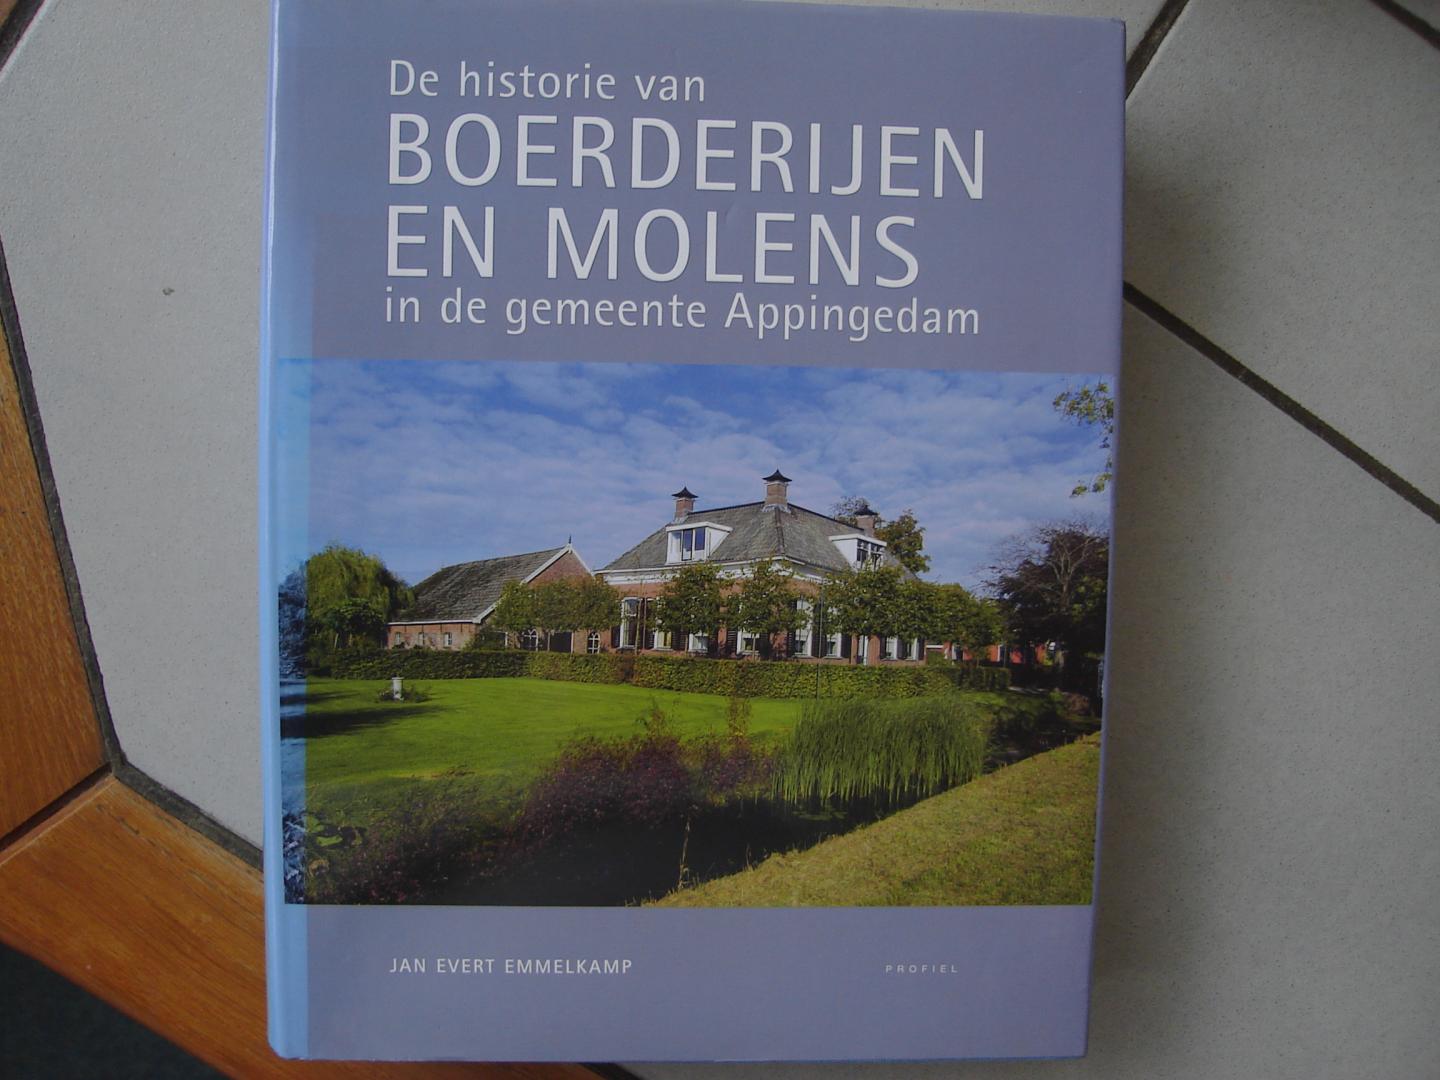 Jan Evert Emmelkamp. - De historie van Boerderijen en Molens in de gemeente Appingedam. ( Boerderijenboek ).